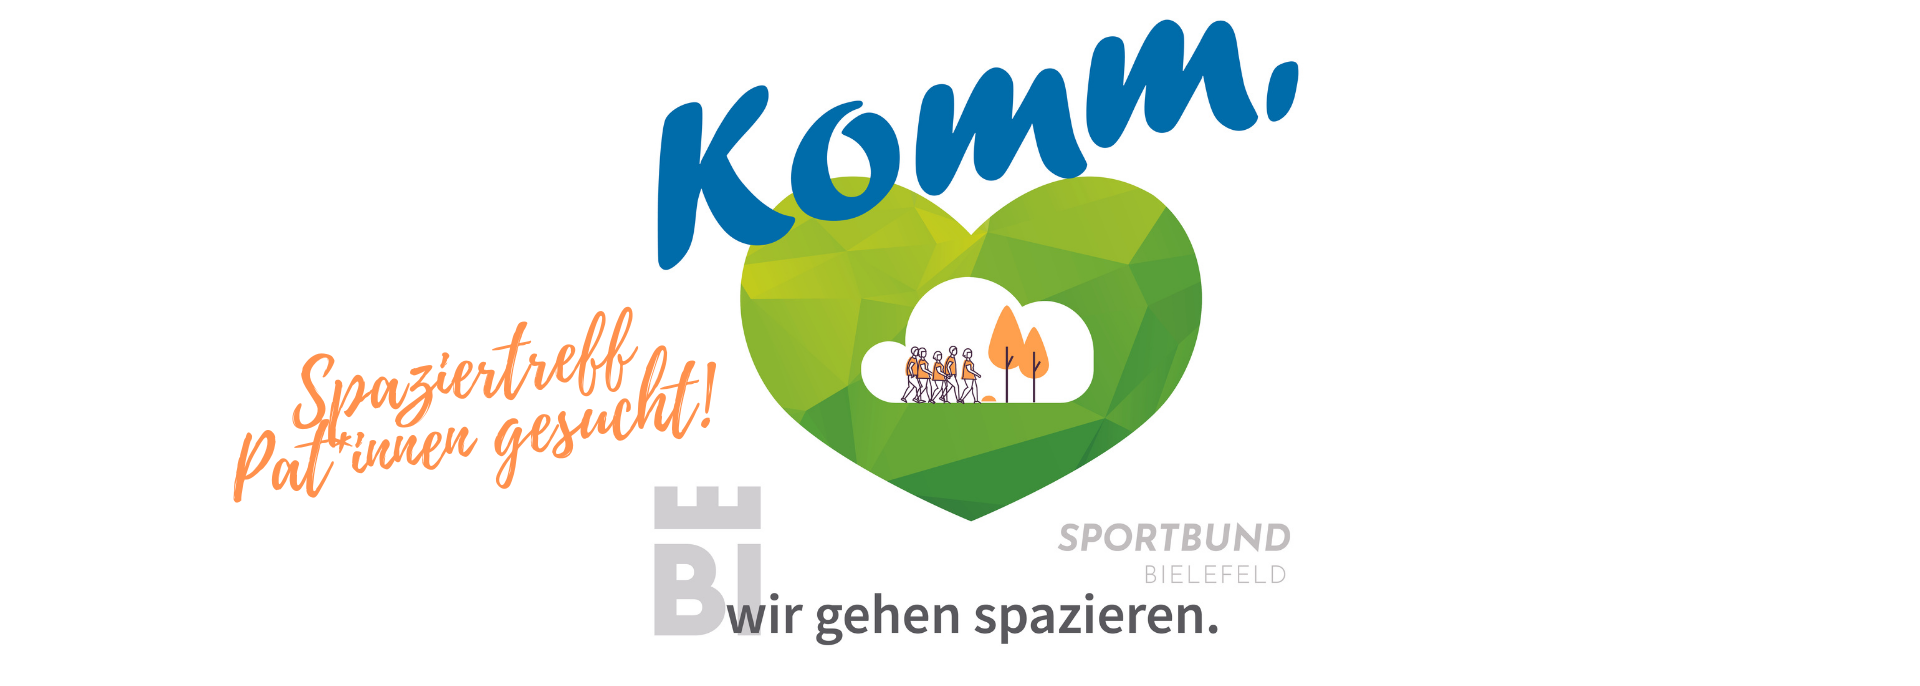 Stadtsportbund Bielefeld e.V.